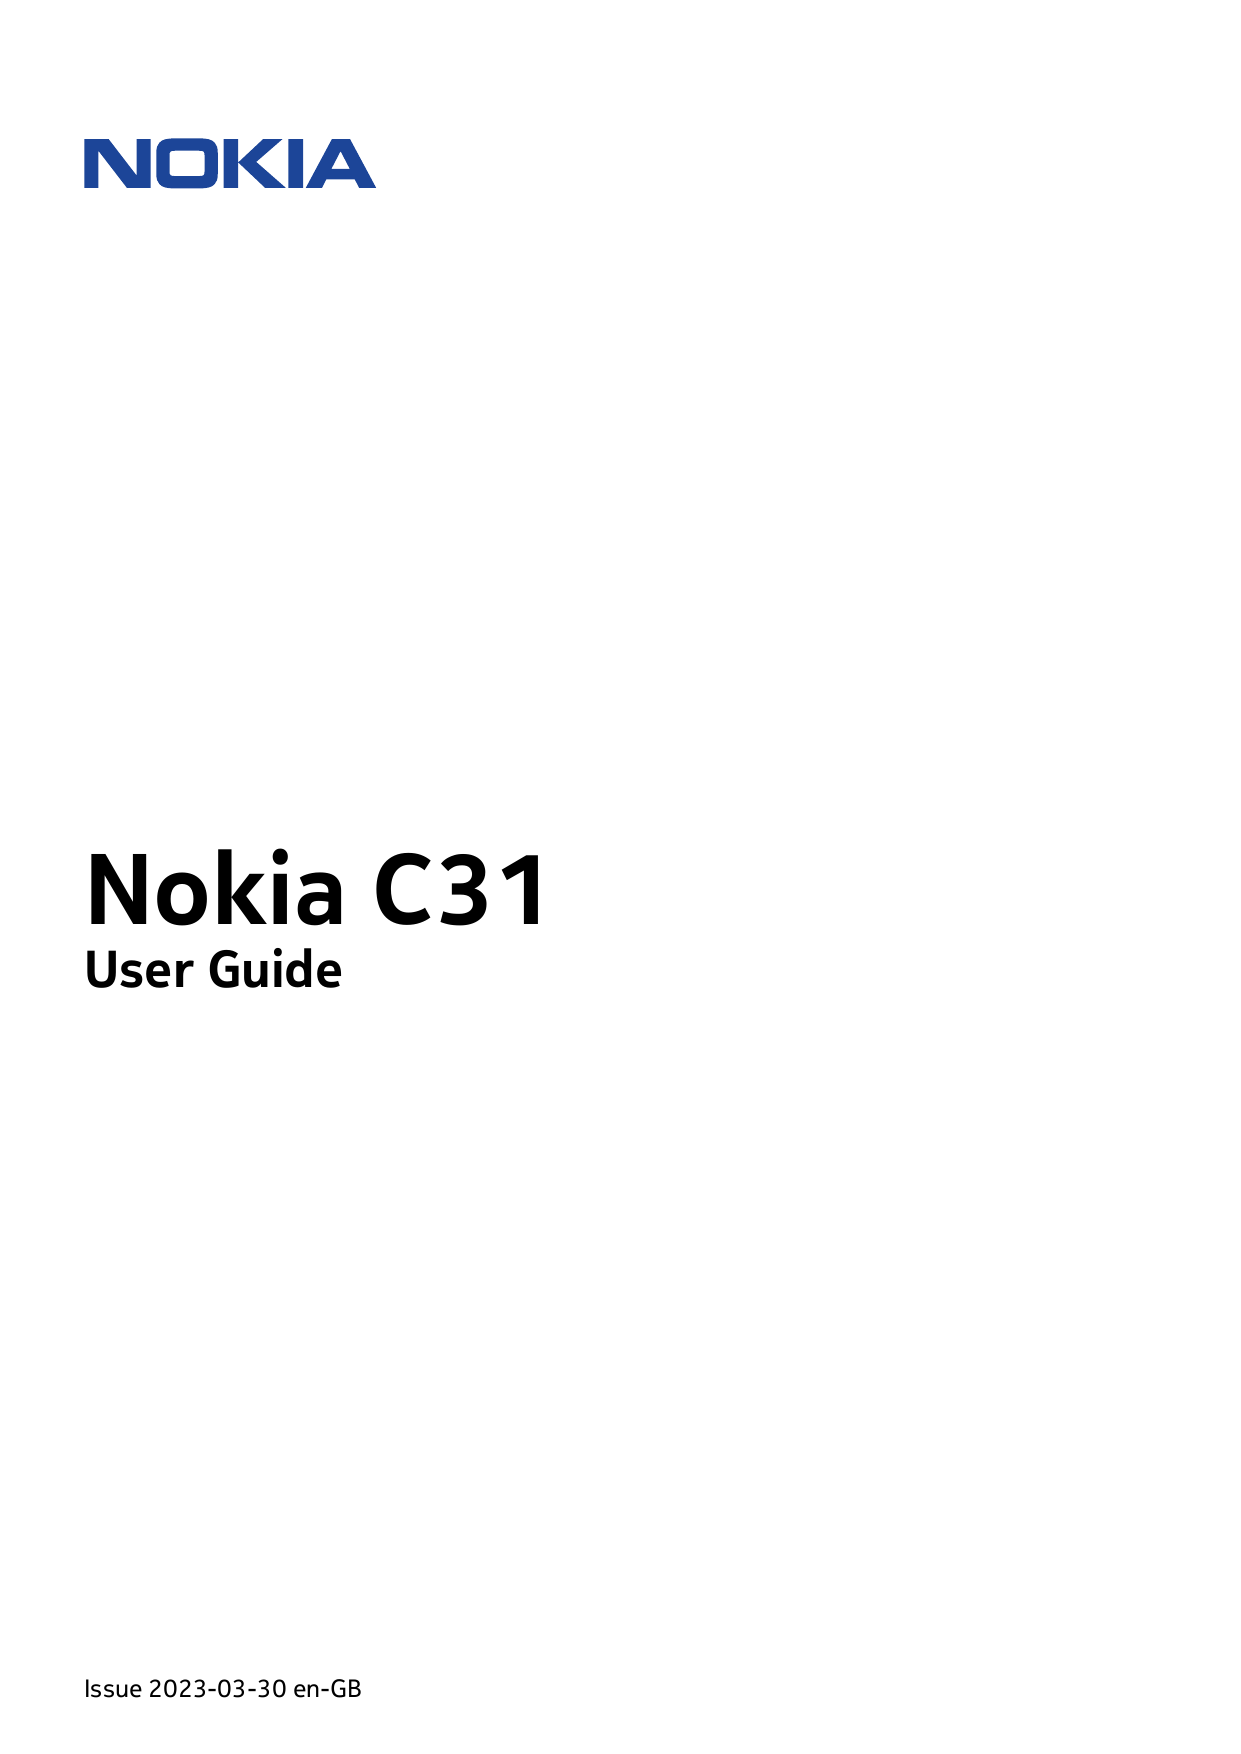 Nokia C31User GuideIssue 2023-03-30 en-GB